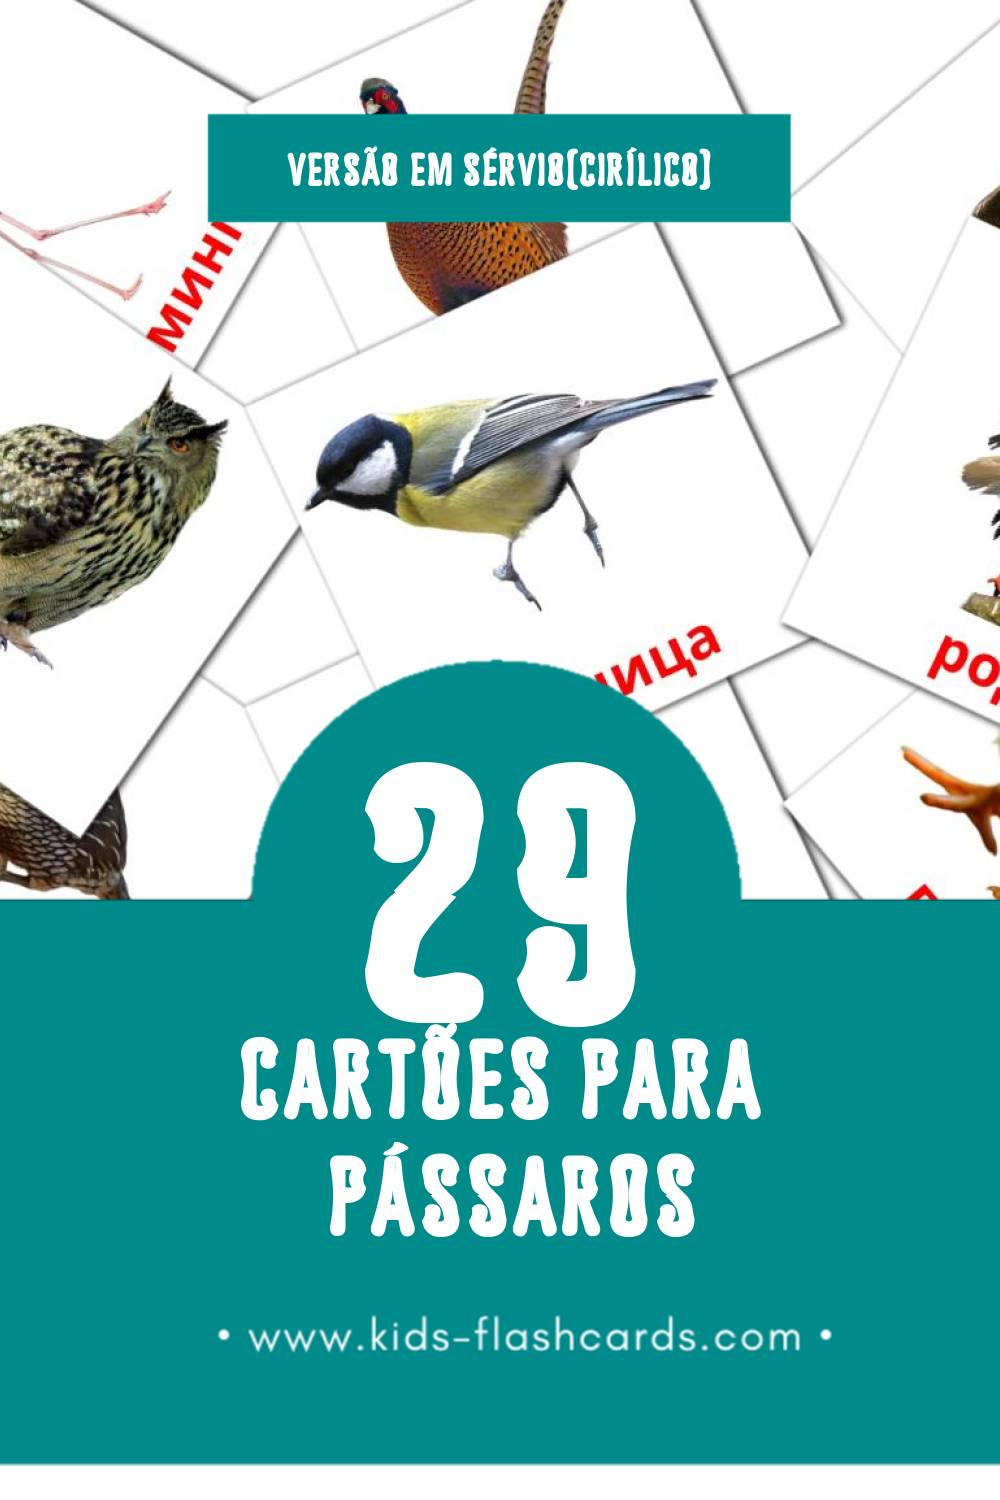 Flashcards de Птице Visuais para Toddlers (29 cartões em Sérvio(cirílico))